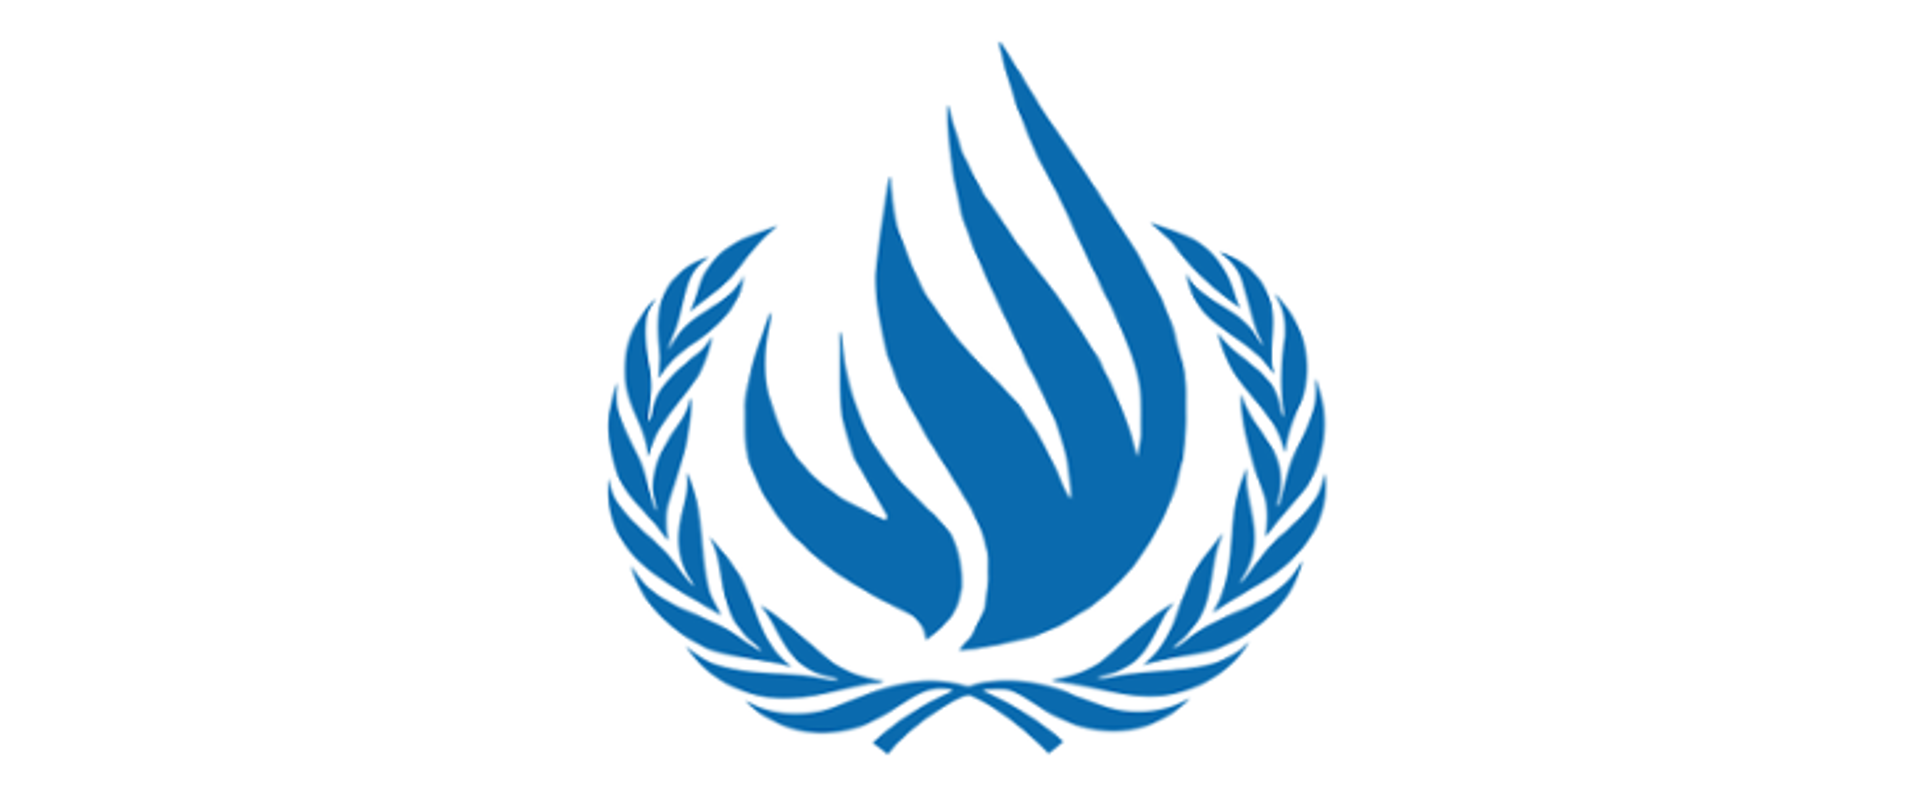 Комиссар оон по правам человека. Совет по правам человека ООН эмблема. Управление Верховного комиссара ООН по правам человека. Верховный комиссар ООН по правам человека эмблема. Эмблема УВКПЧ ООН.